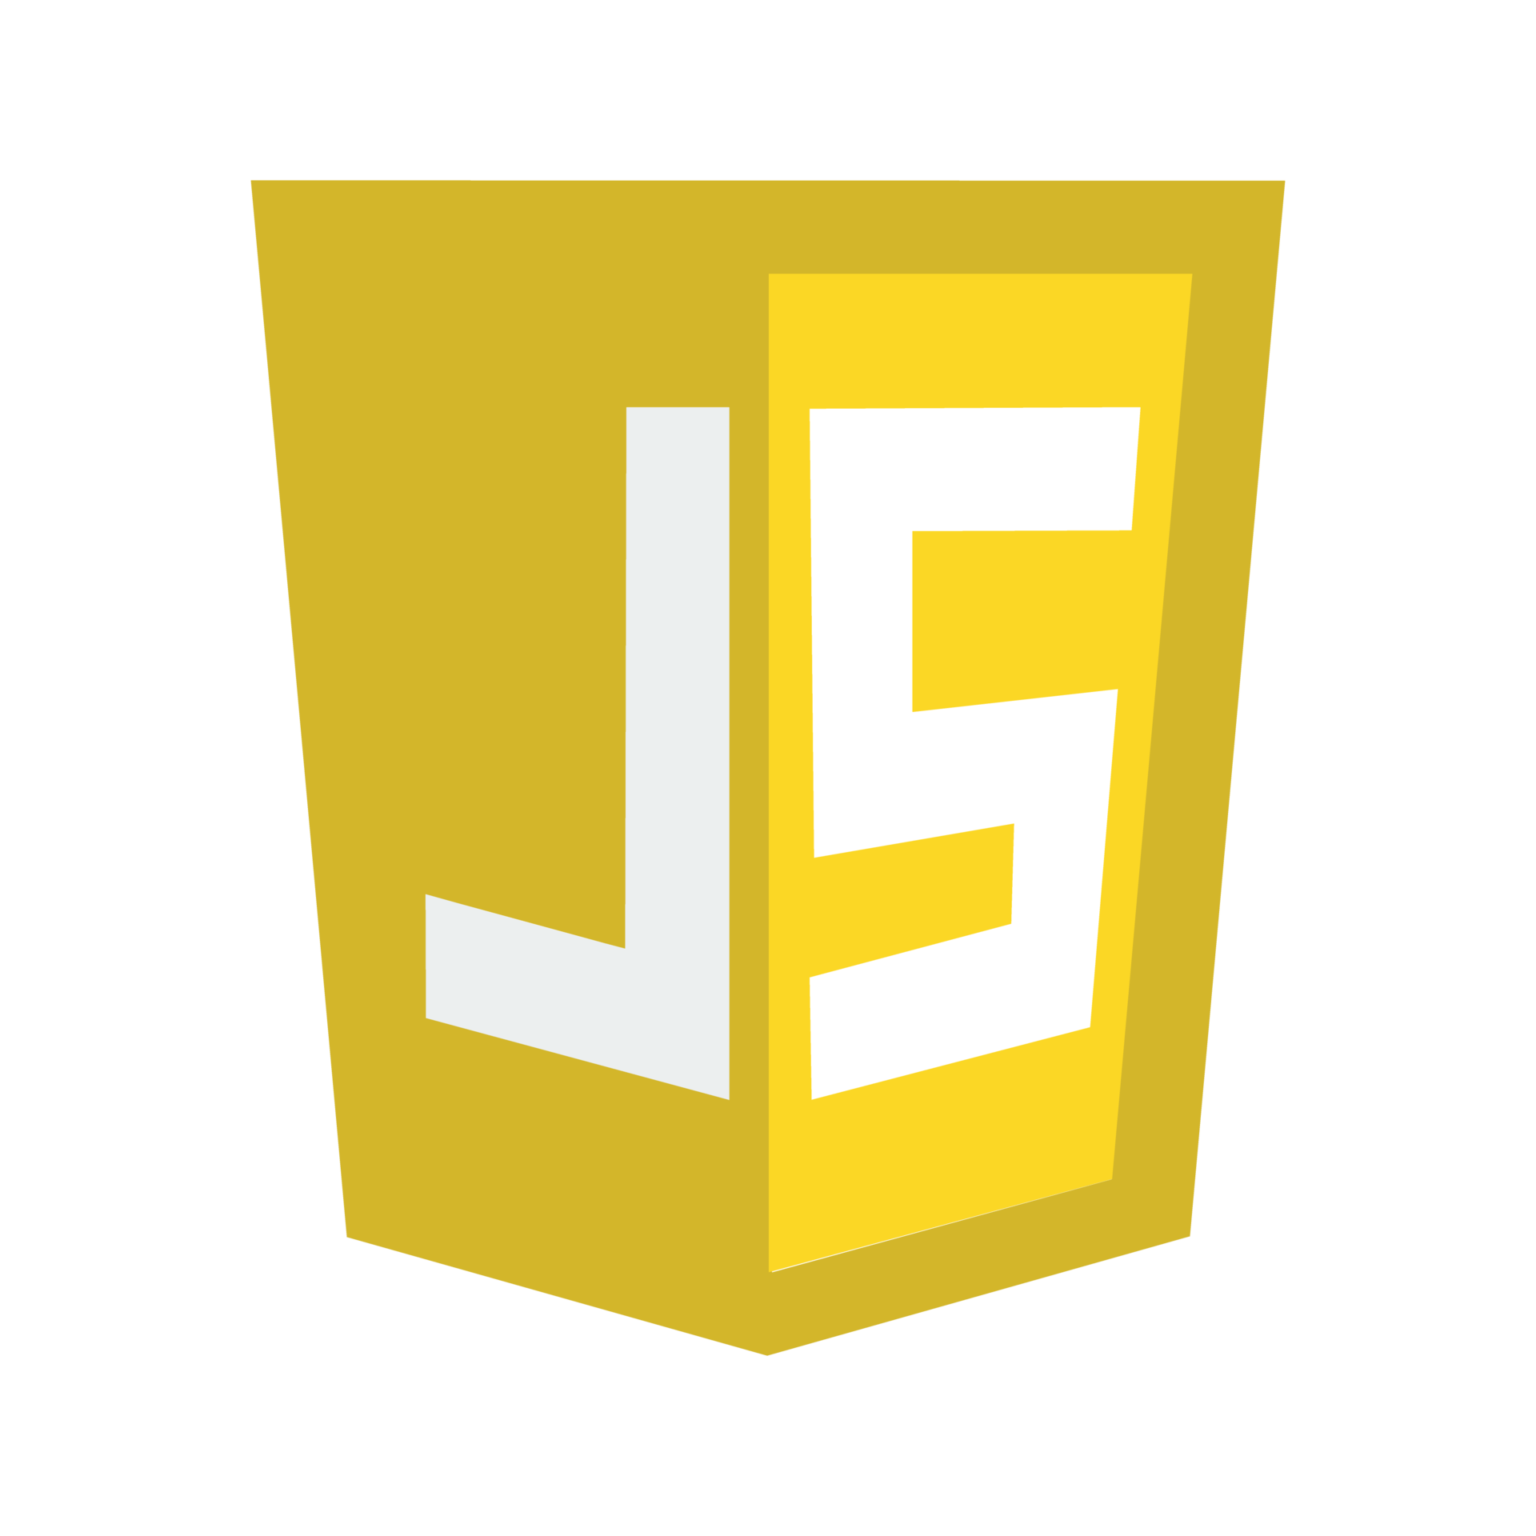 Code eines JavaScript-Programms auf einem Laptopbildschirm neben einem Browserfenster mit einer interaktiven Webseite.